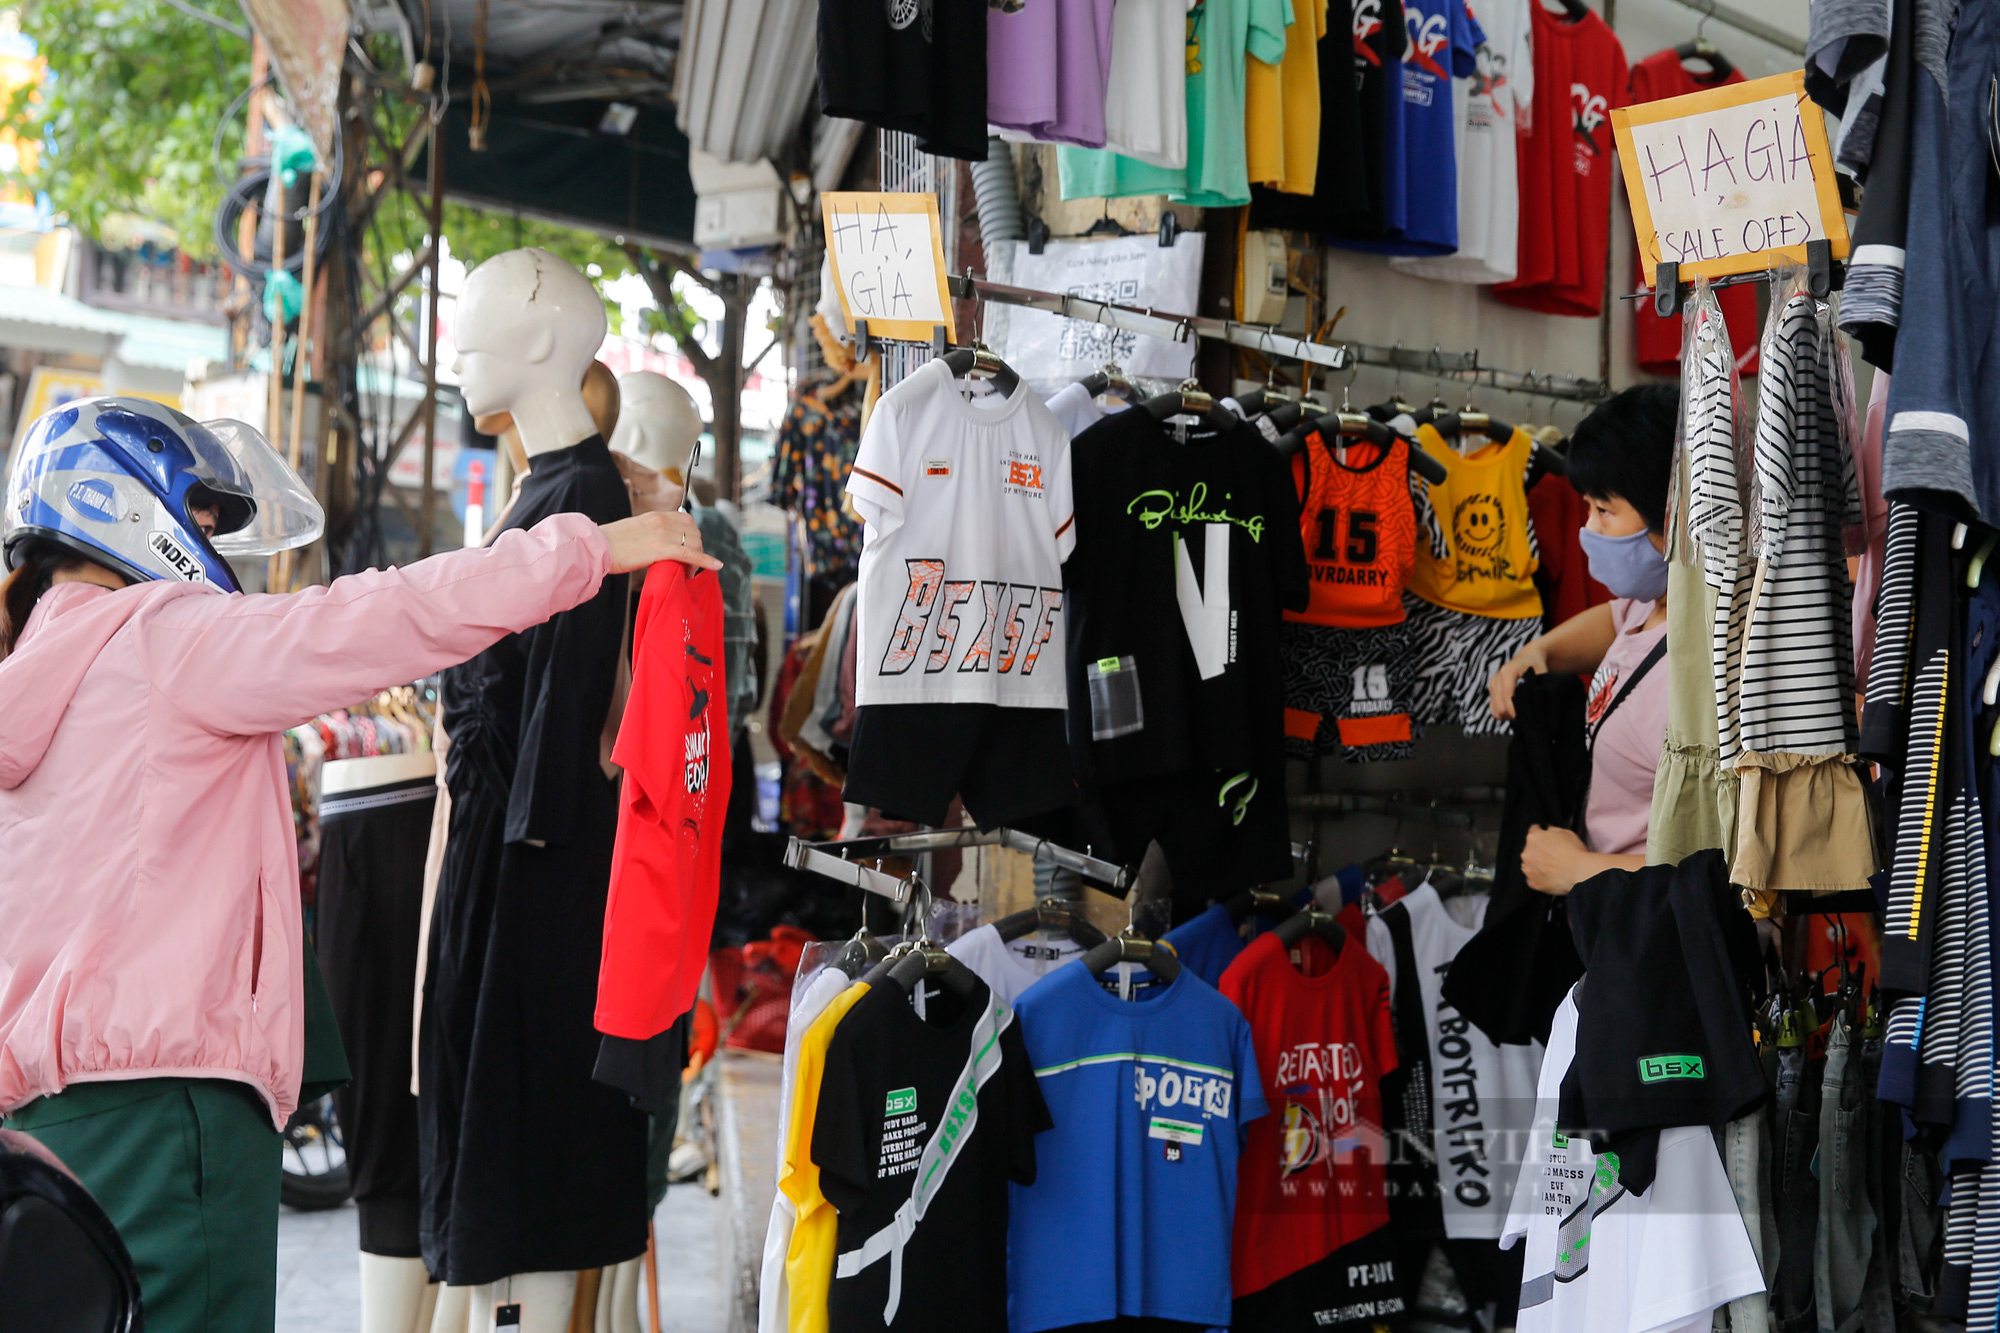 Giá thuê giảm 50%, chủ nhà vẫn bị “bùng” tiền tại phố buôn bán sầm uất nhất Hà Nội - Ảnh 9.